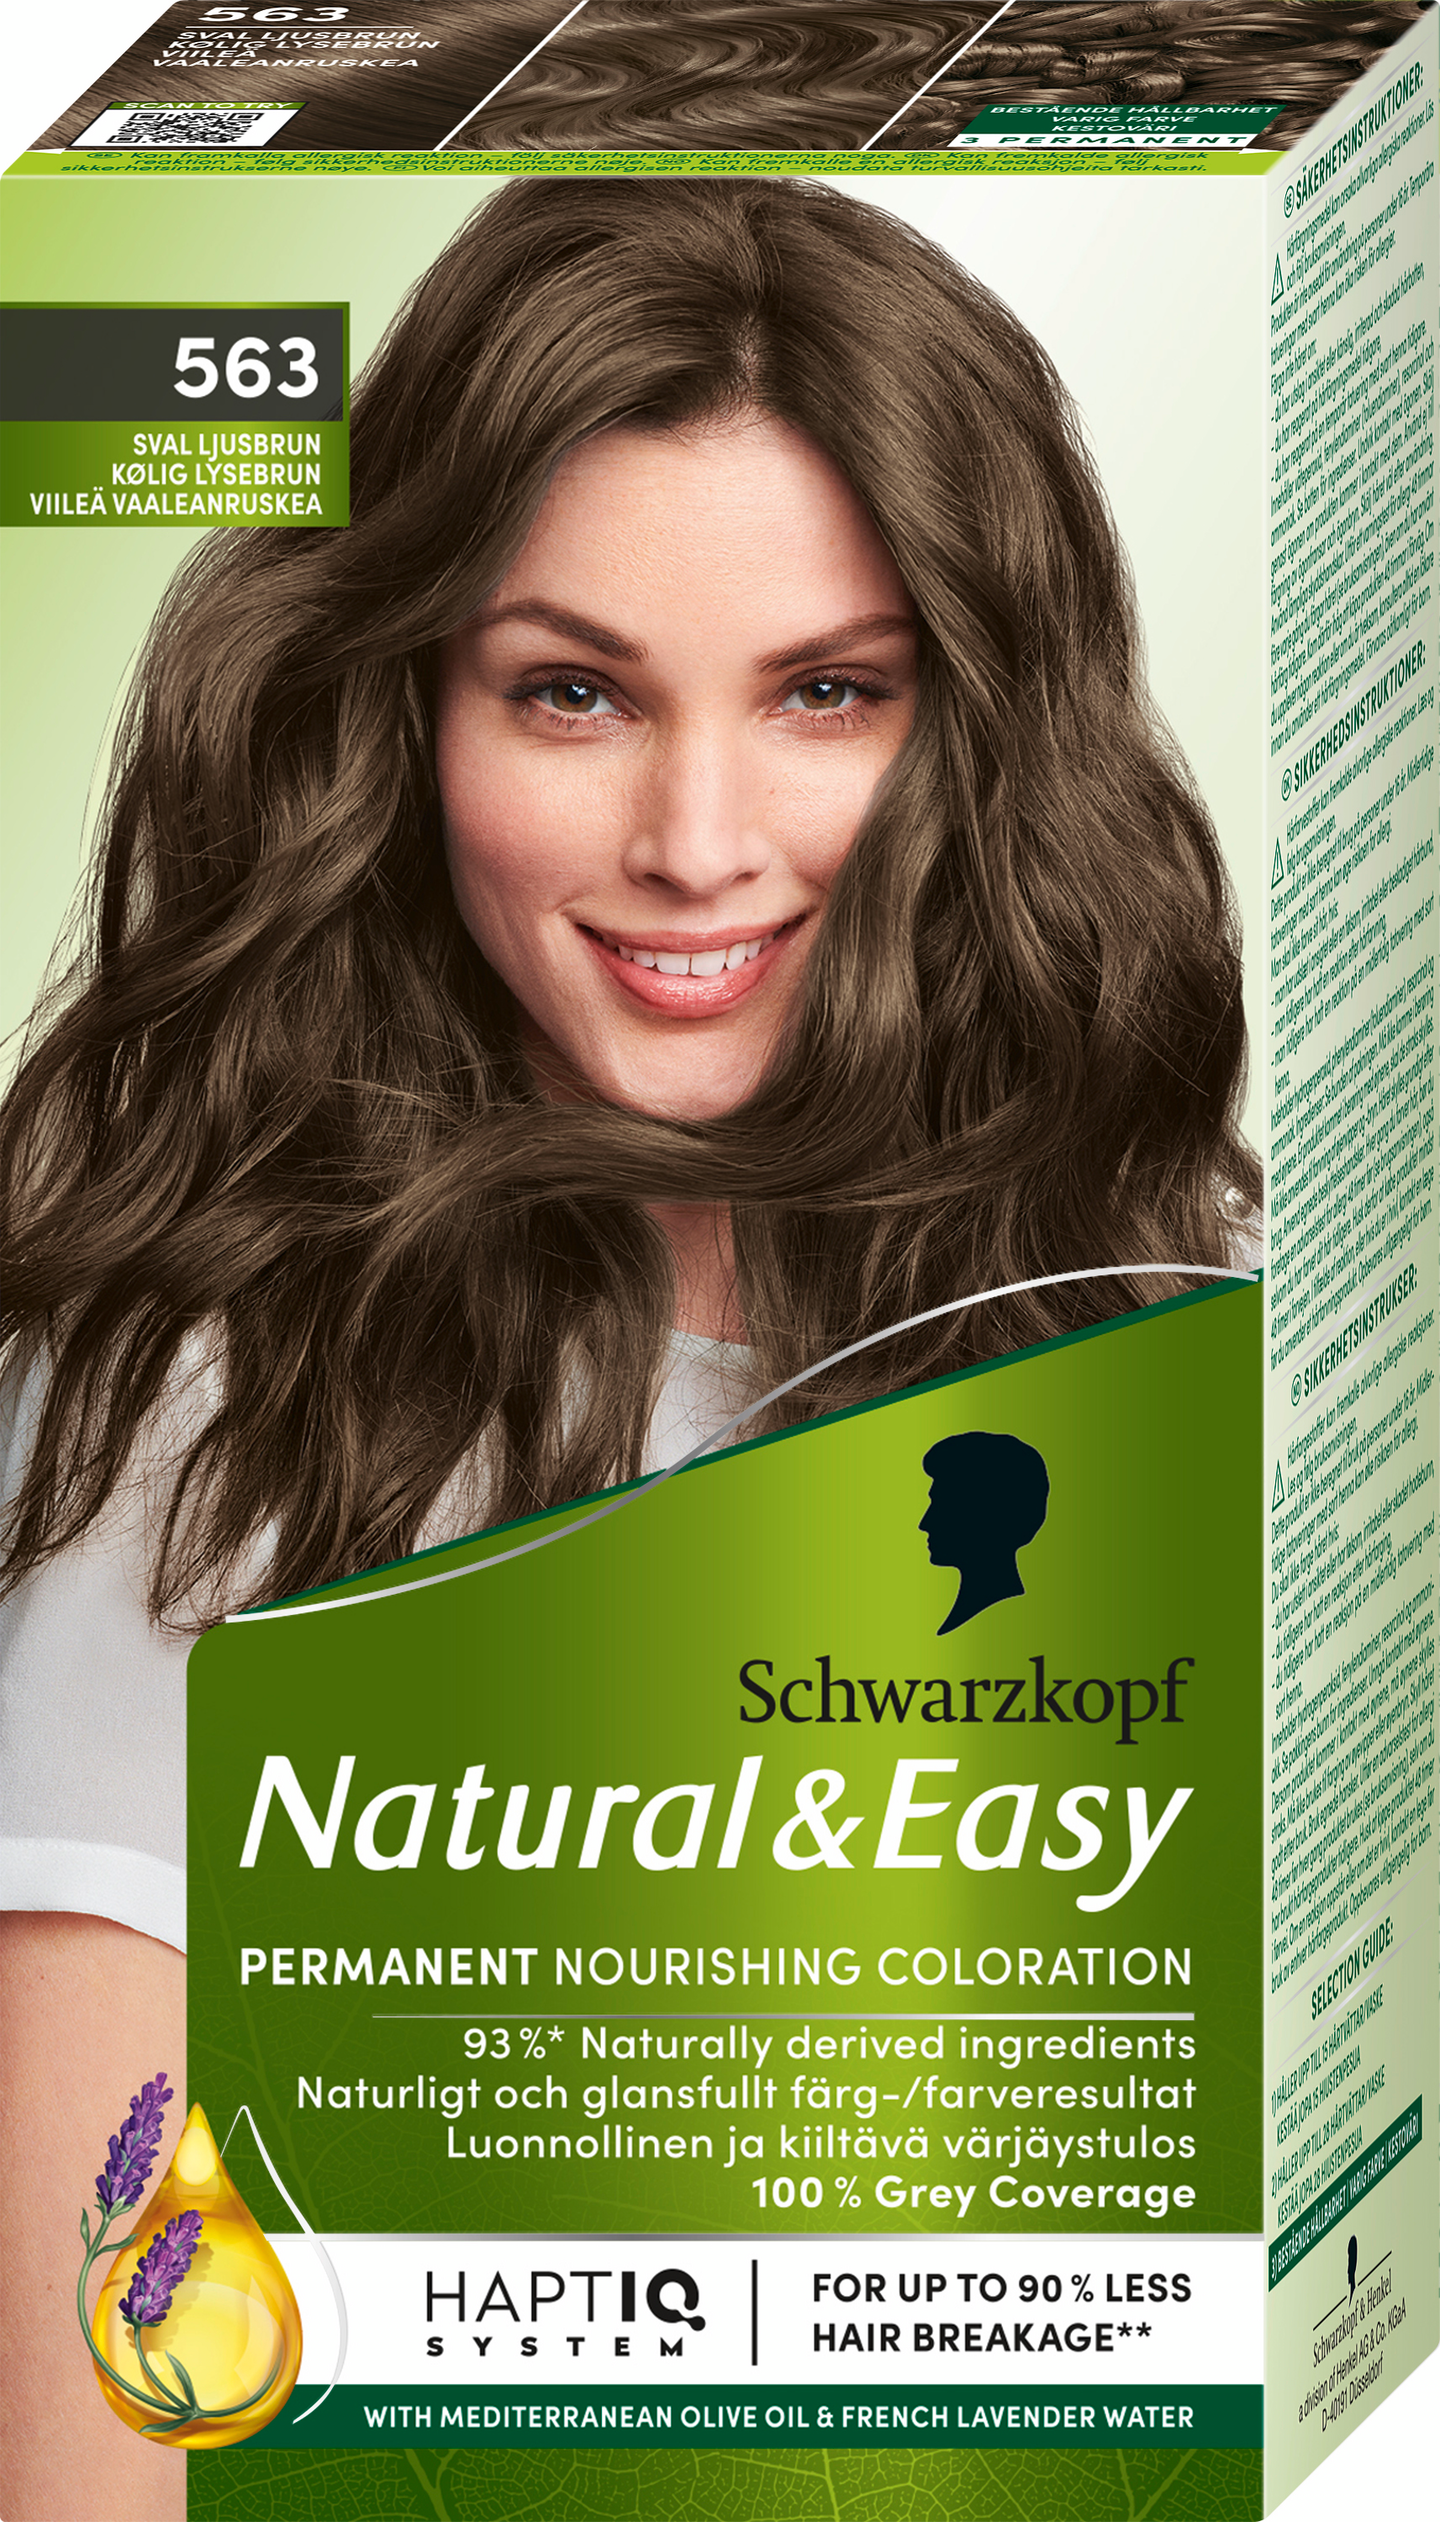 Schwarzkopf Natural & Easy hiusväri 563 Viileä Vaaleanruskea